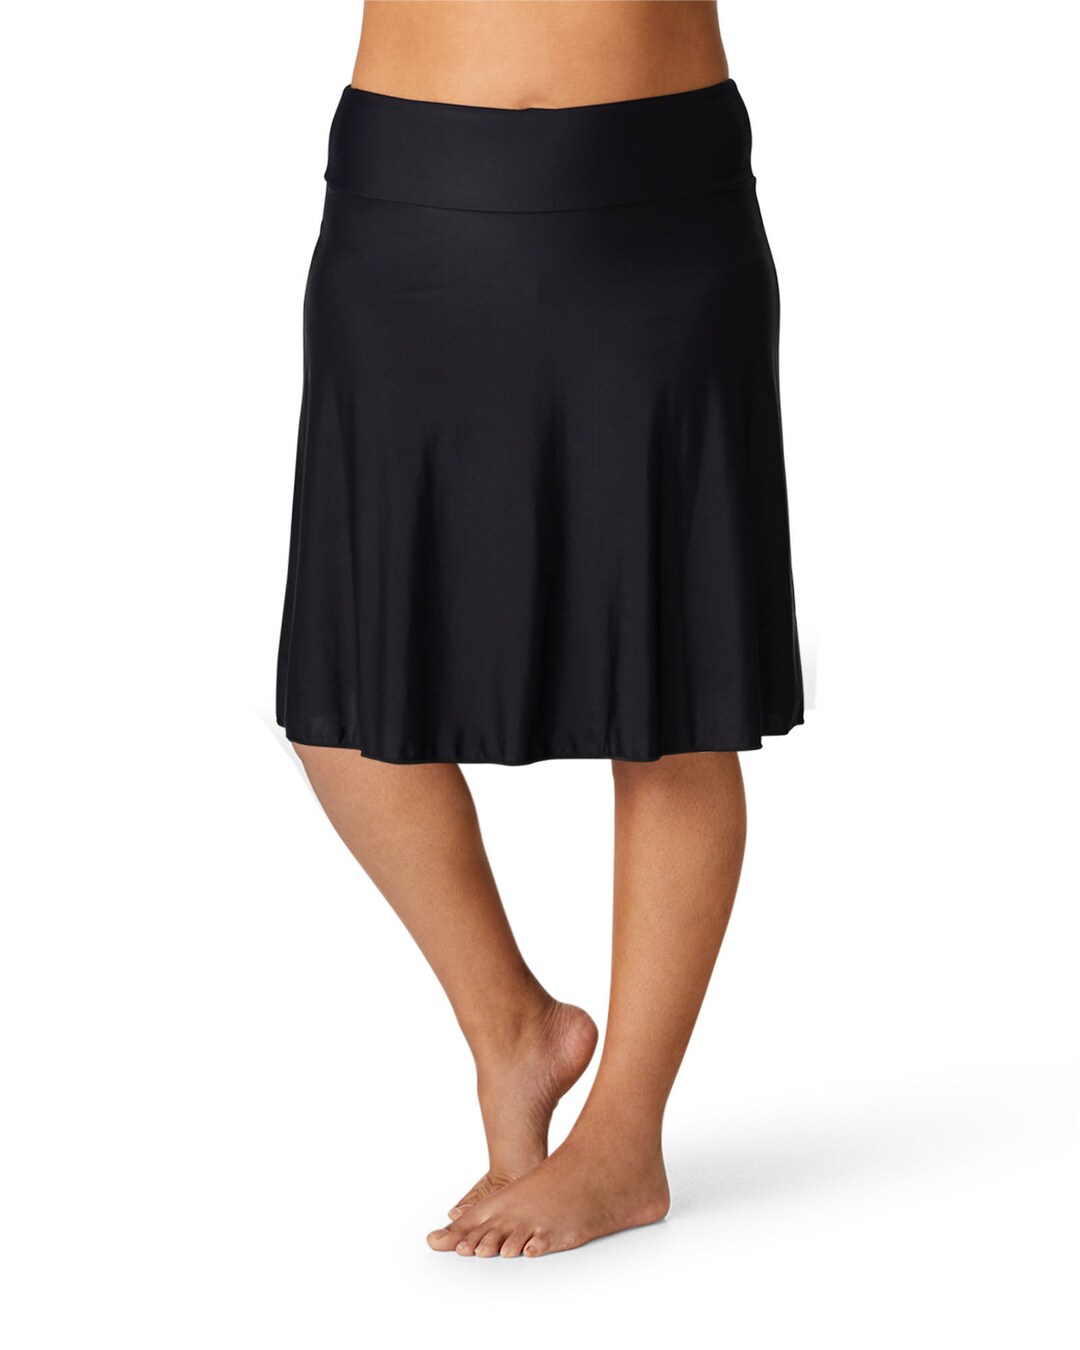 Swim Skirt With Inbuilt Short SPF50 - Etsy